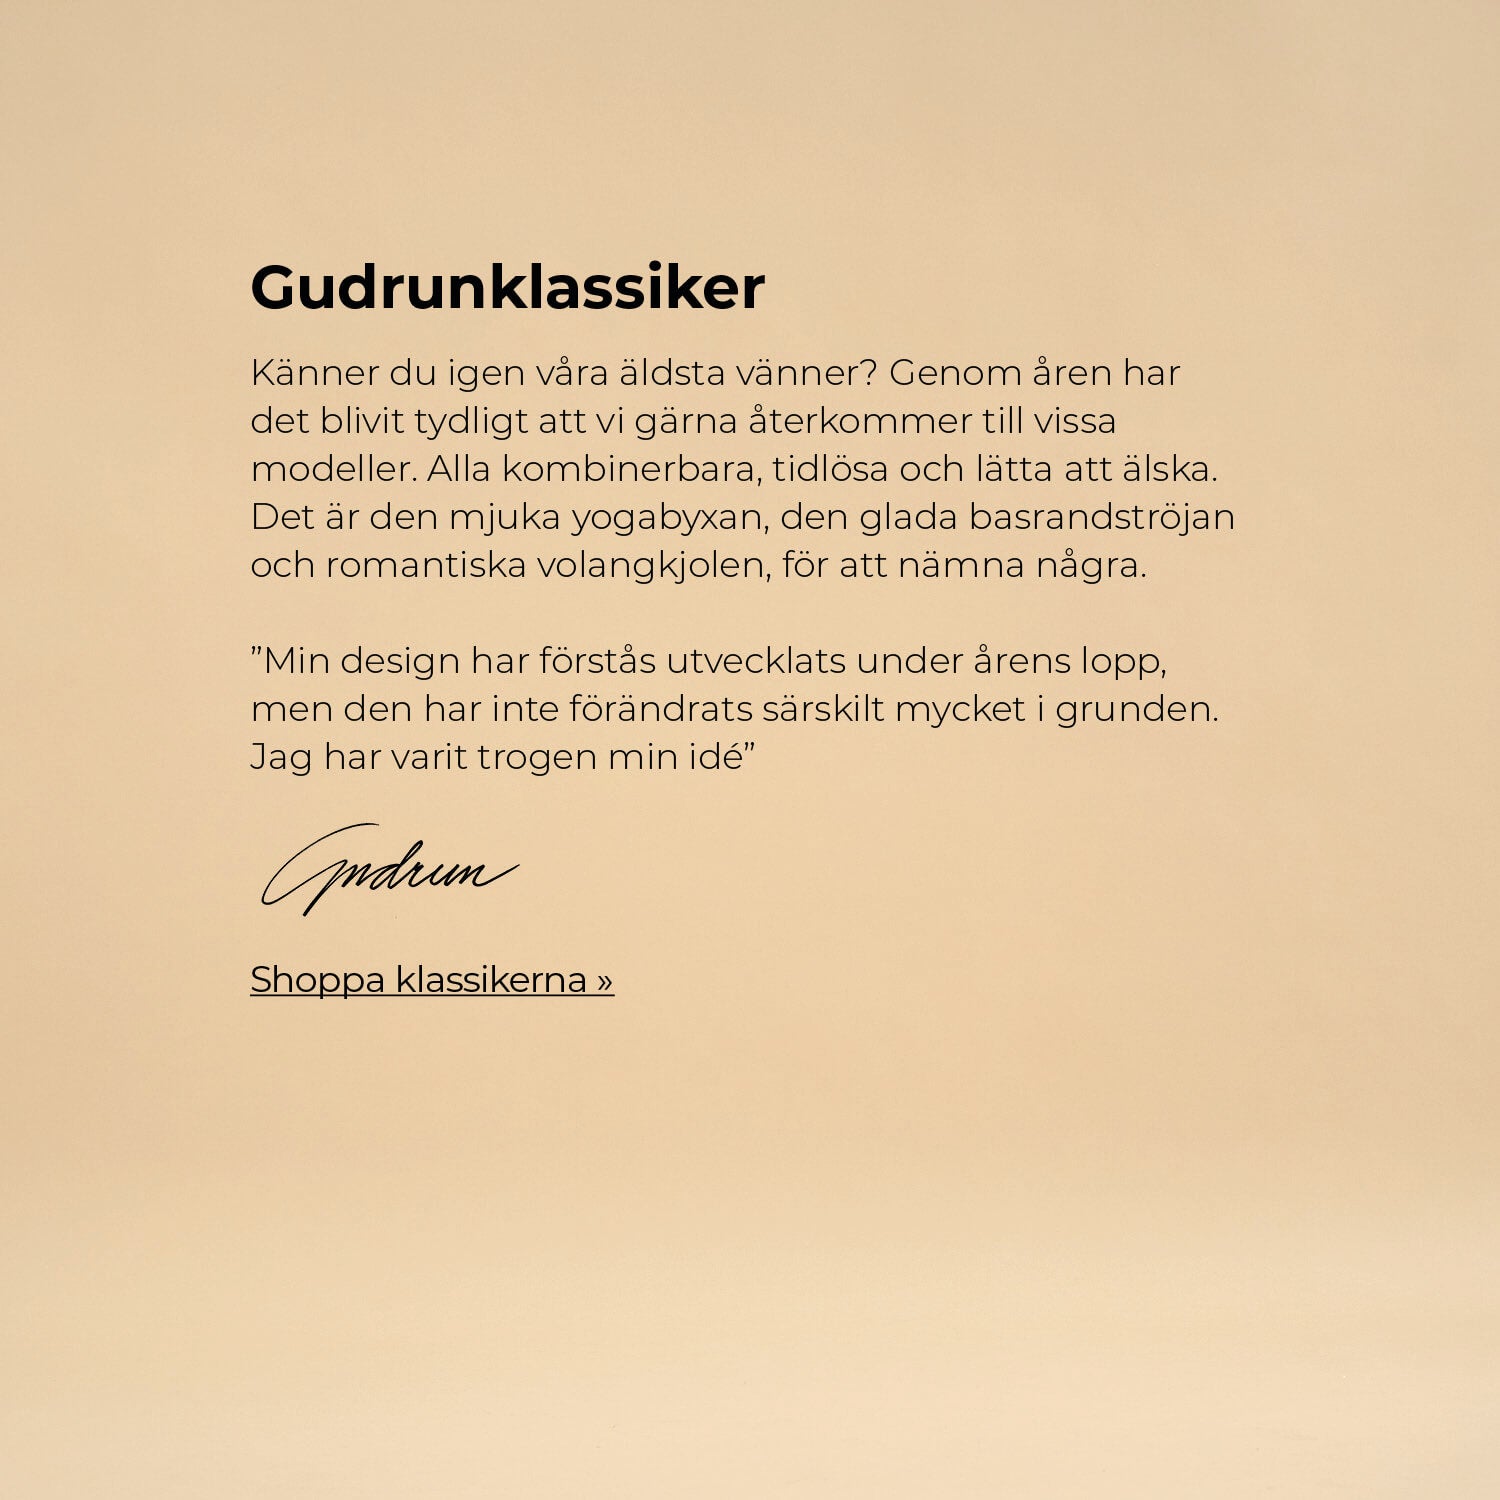 Our most faithful companions – the Gudrun classics.